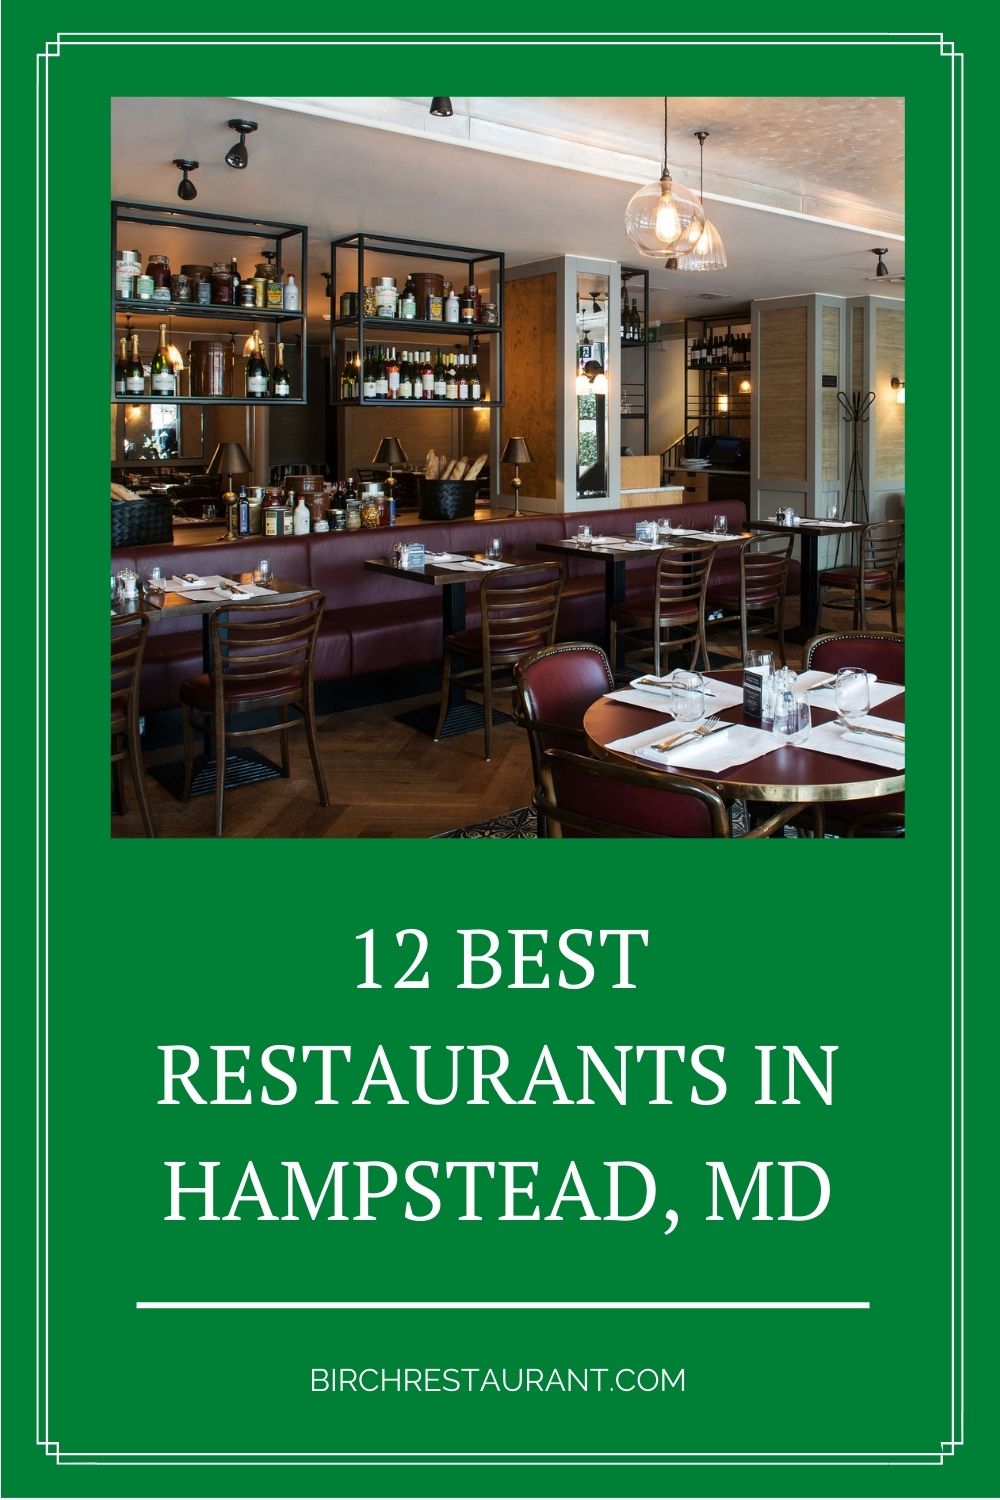 Best Restaurants in Hampstead